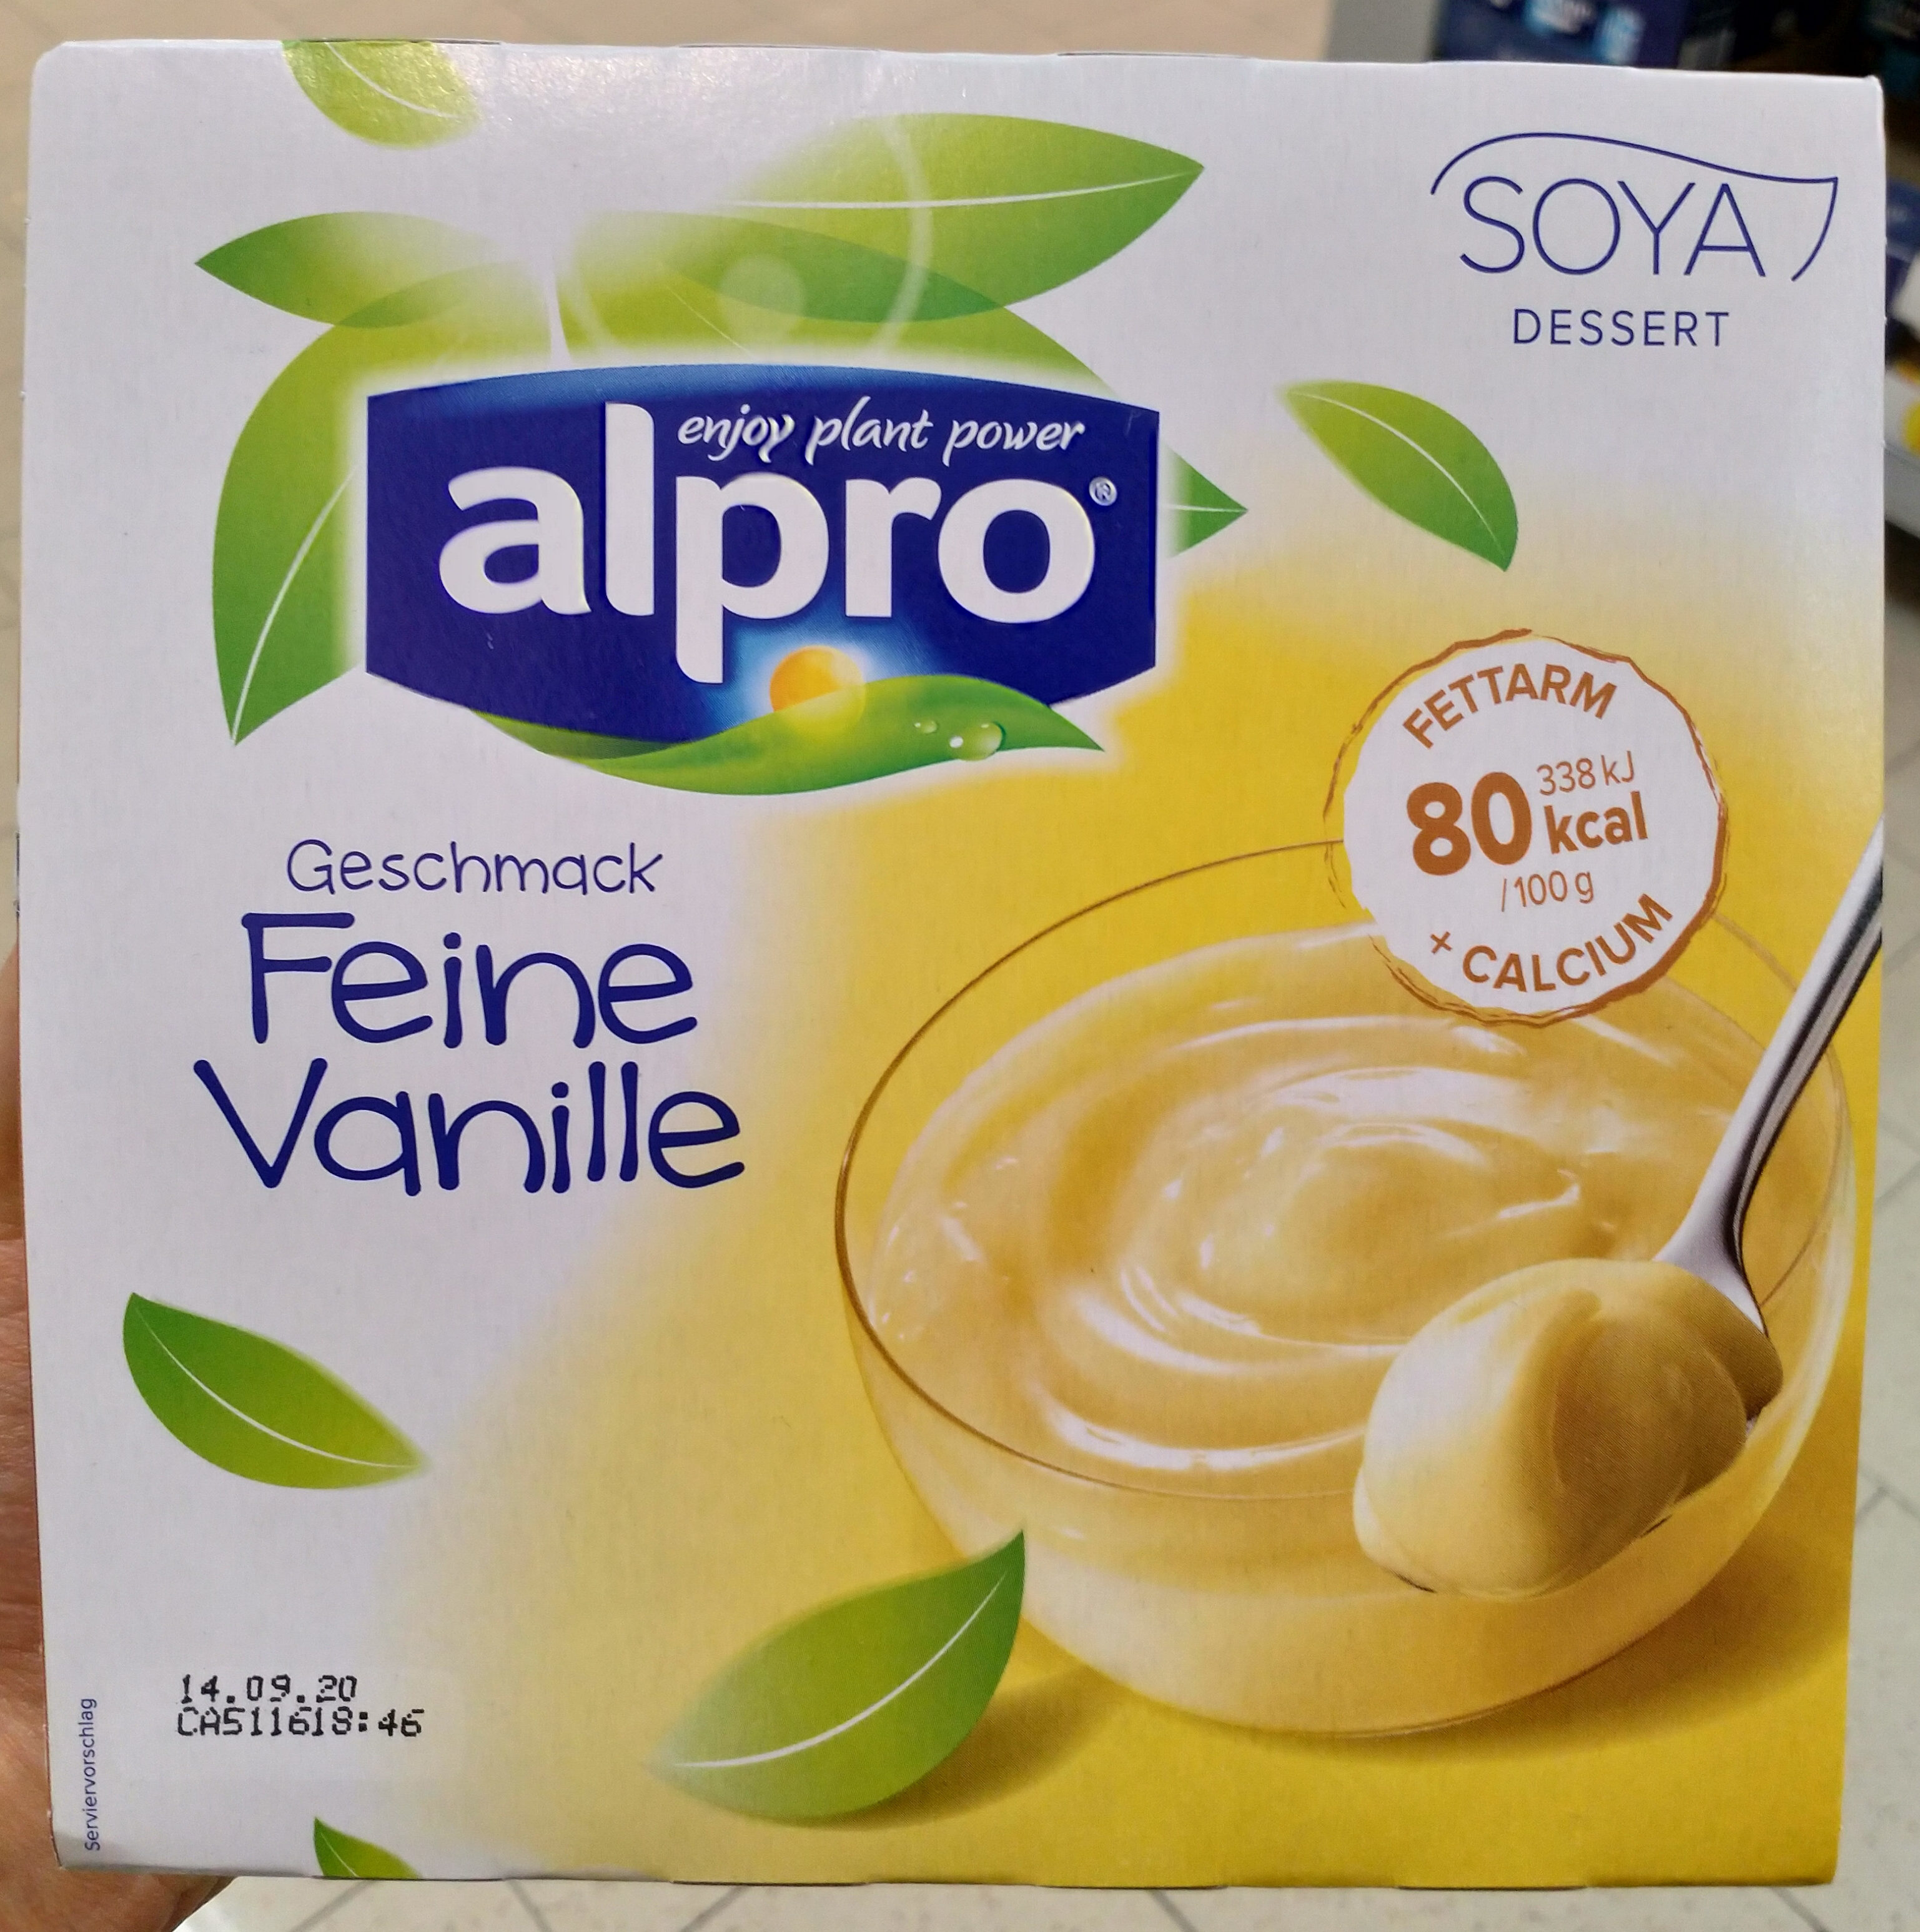 Soya Dessert Feine Vanille - Produkt - de